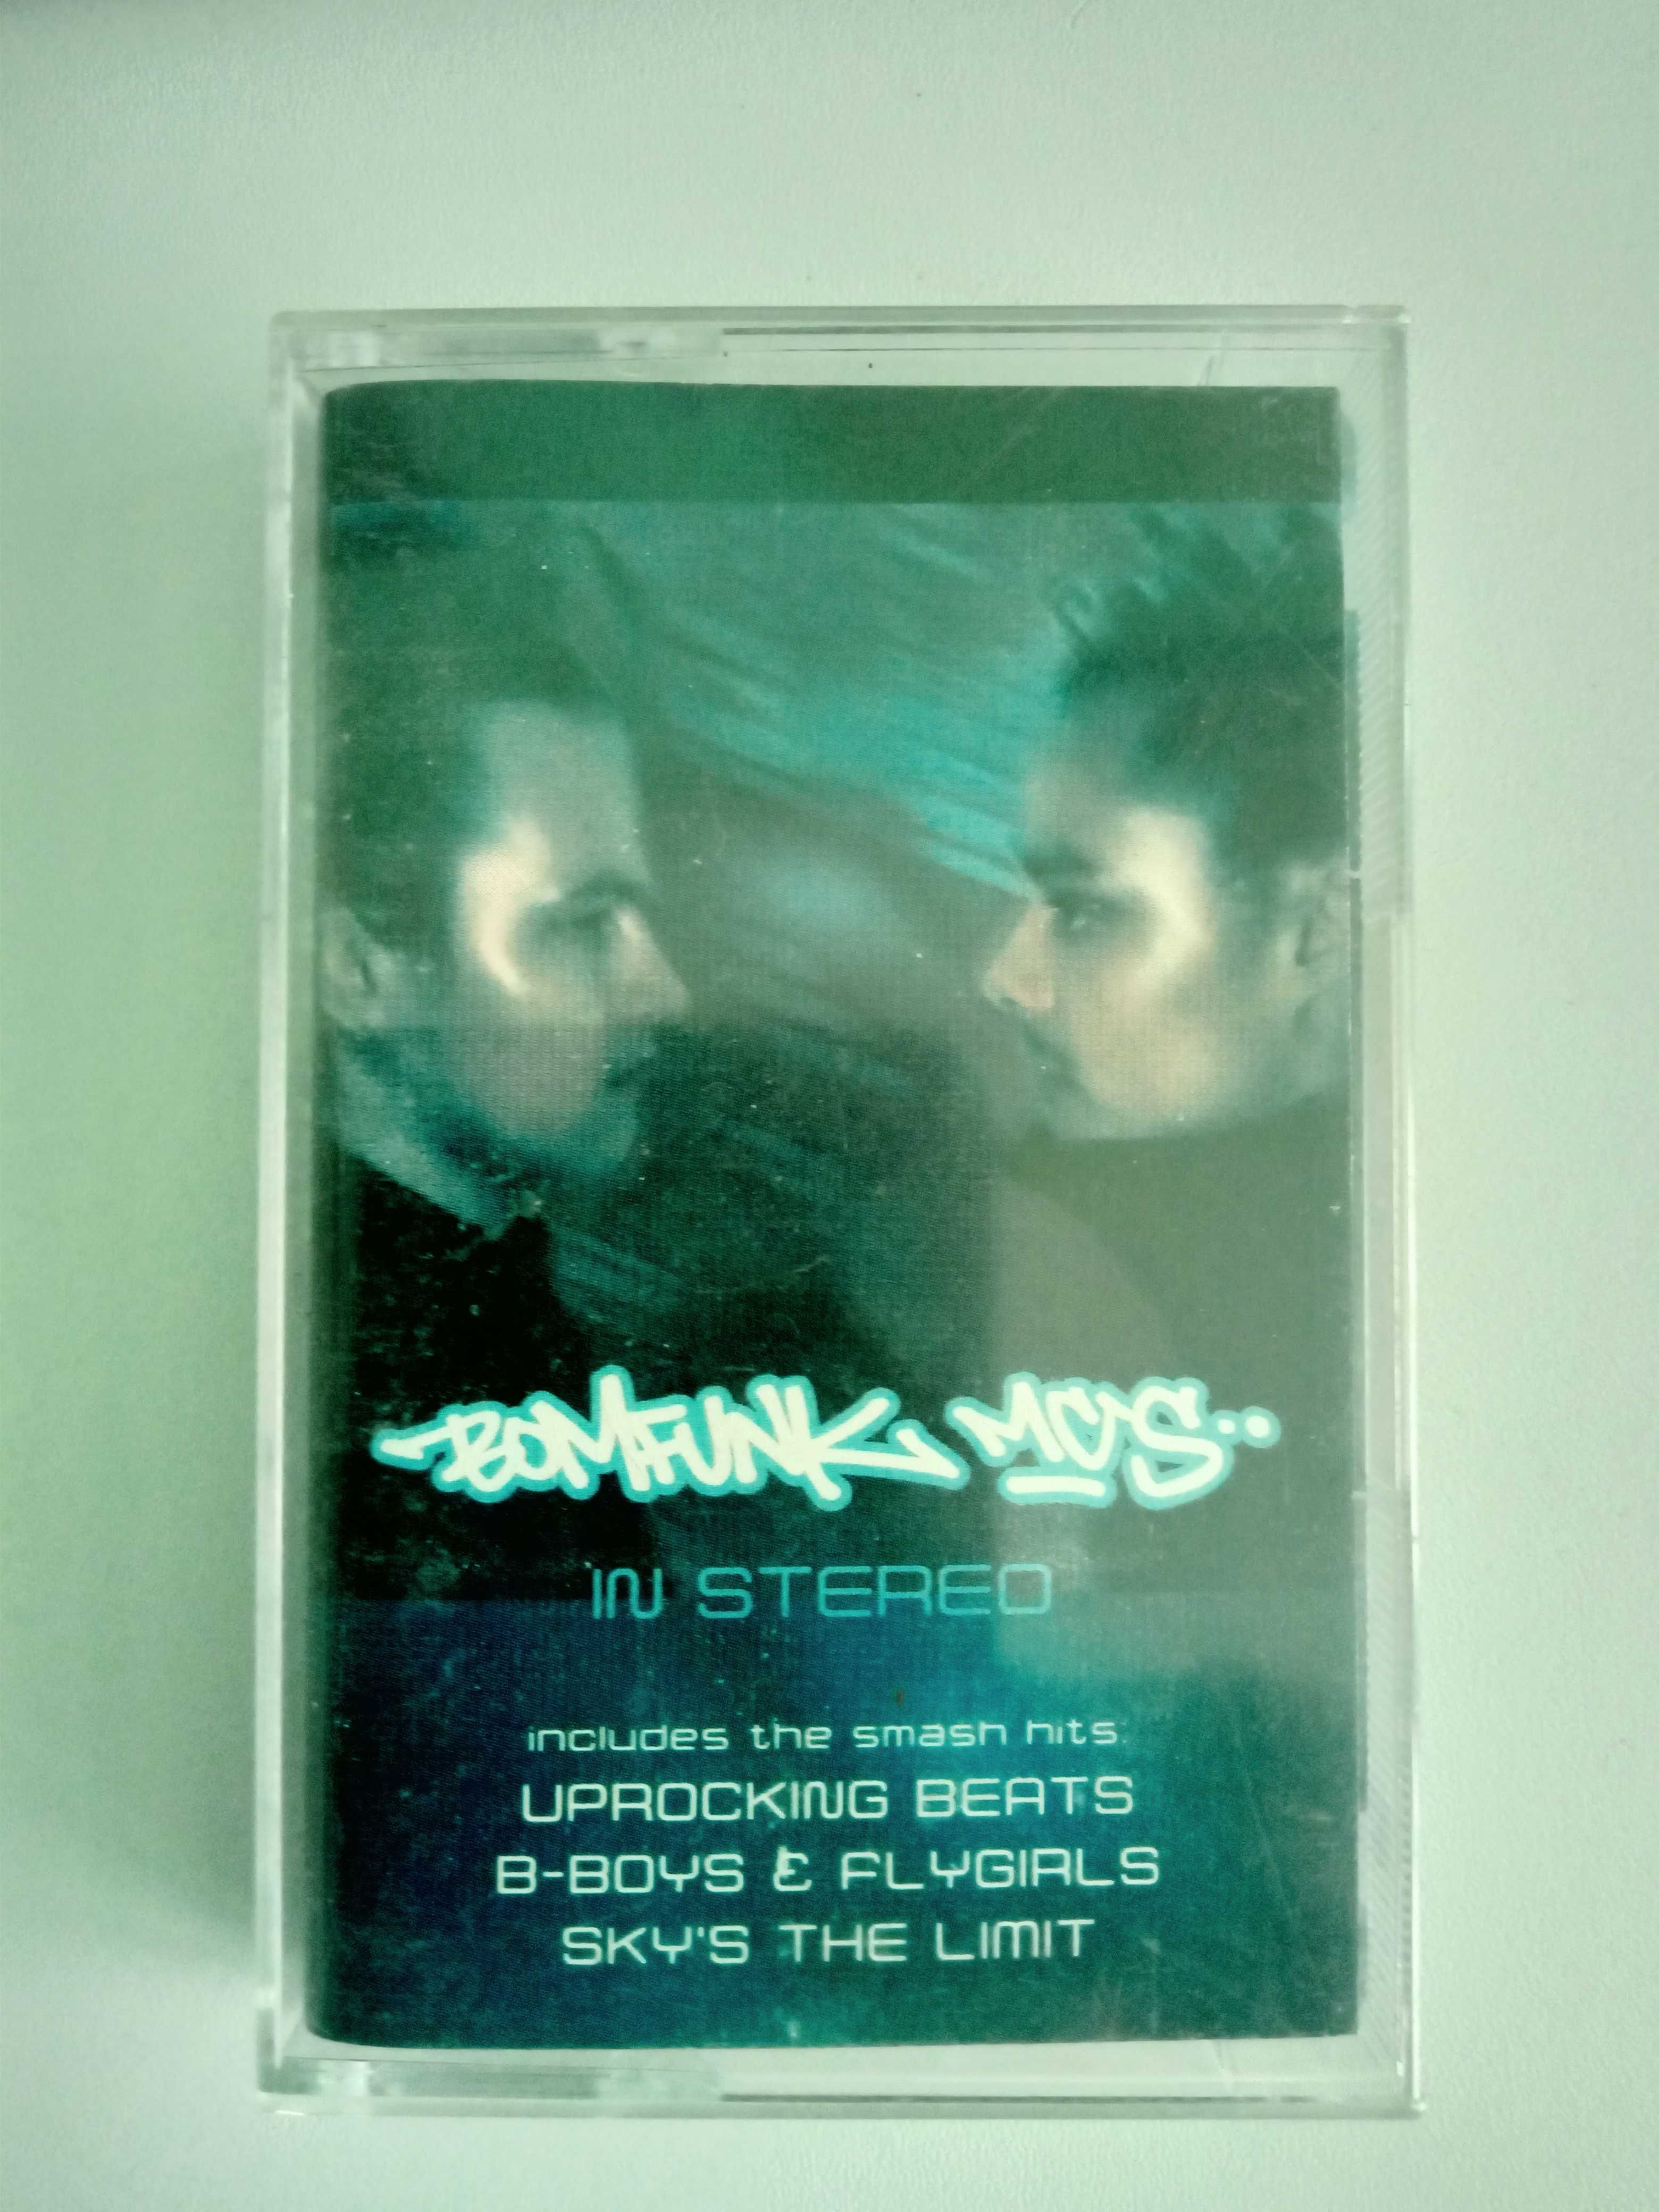 Kaseta Bomfunk Mc's In Stereo (1999) - oryginał z hologramem